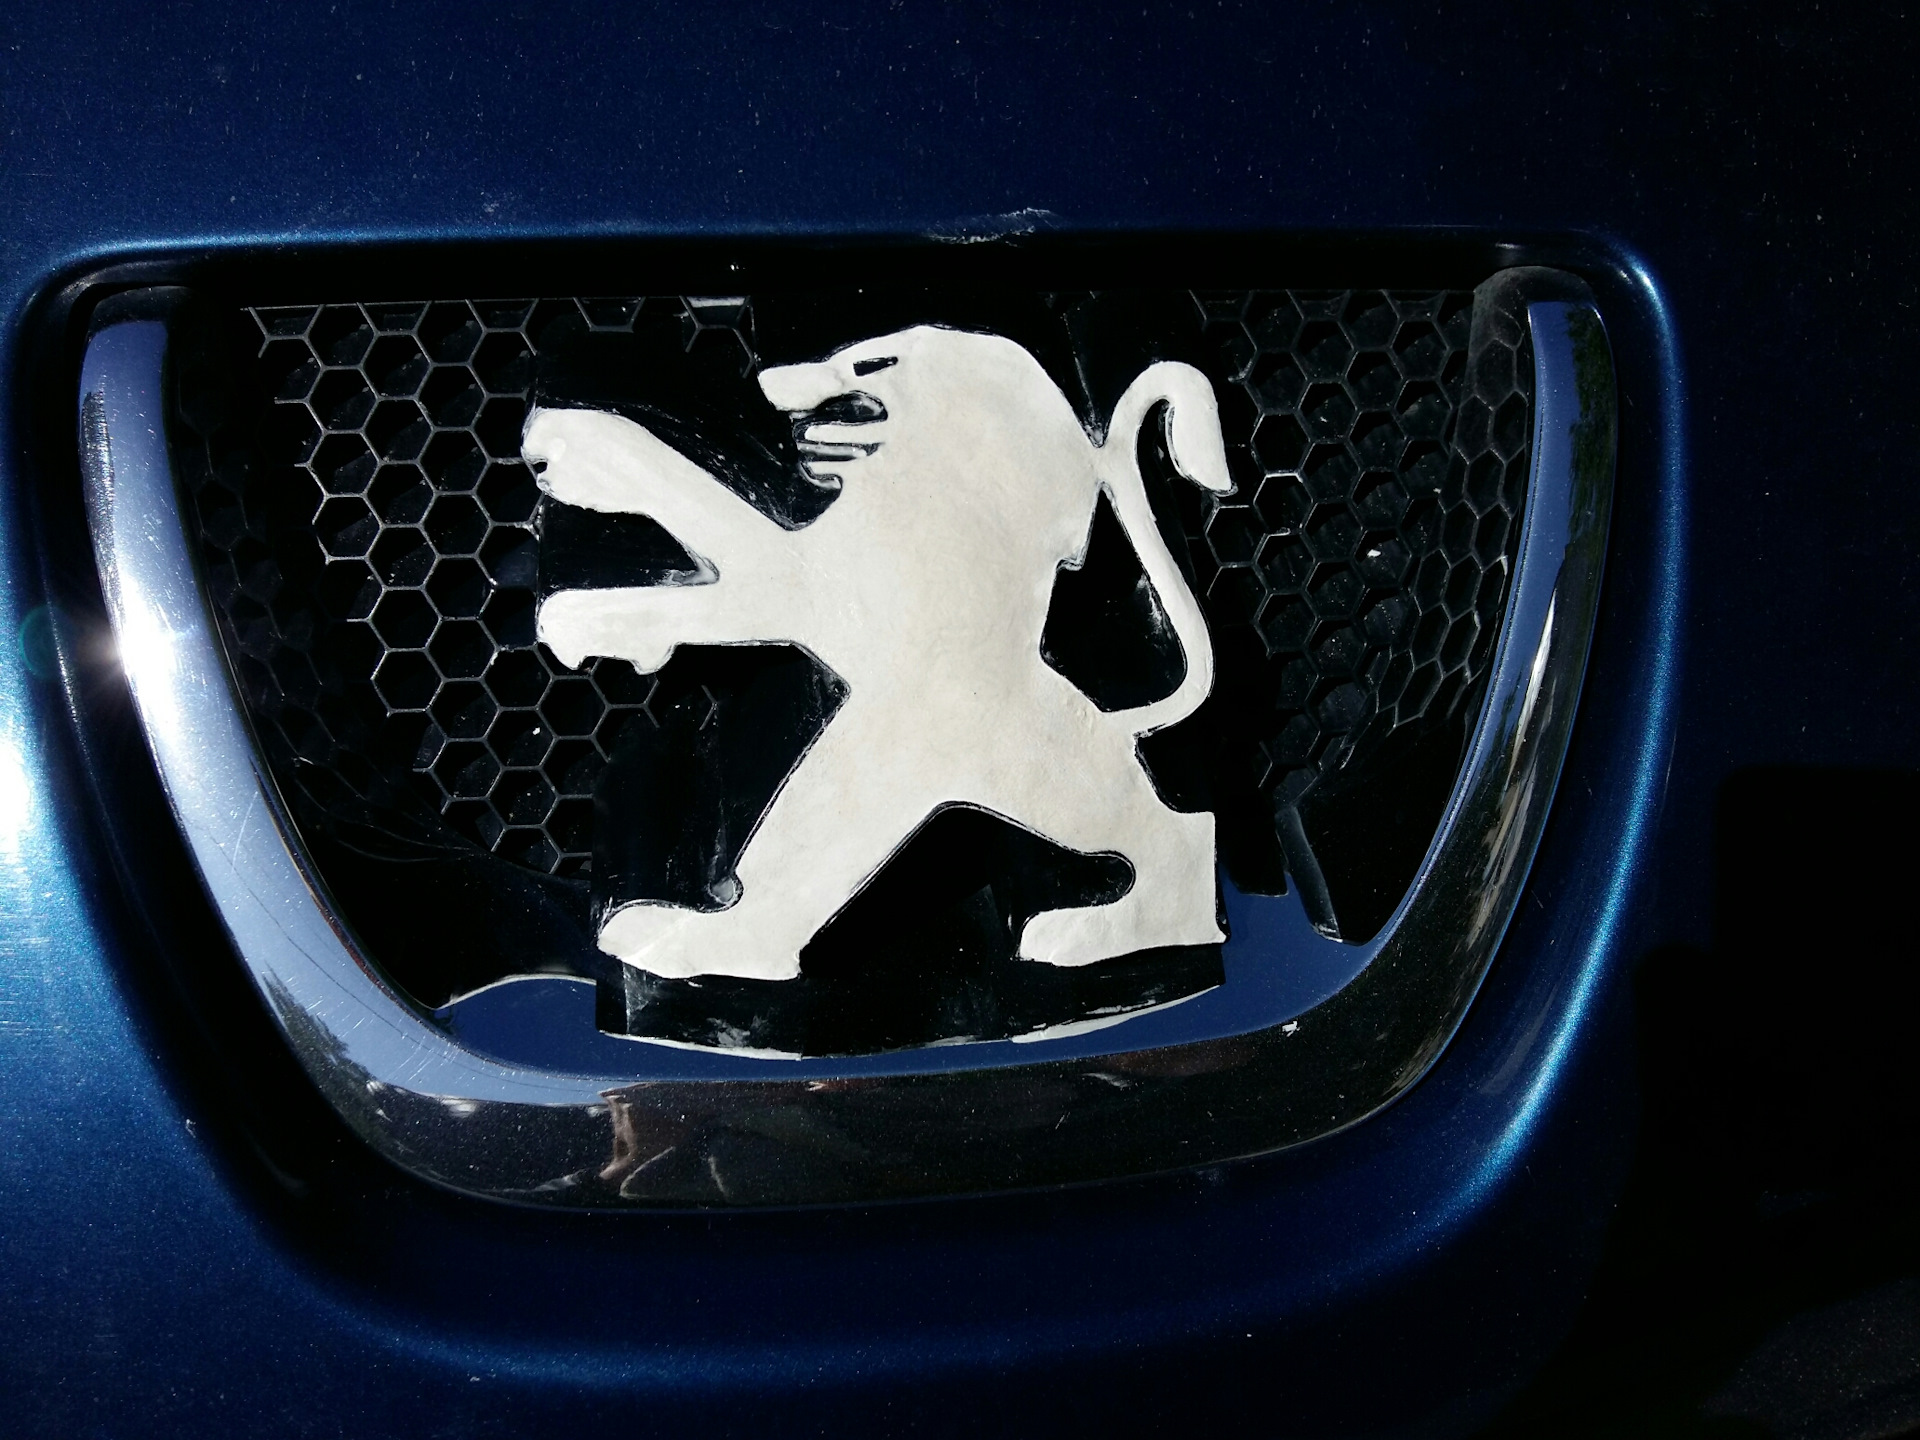 Автомобиль со львом на эмблеме 4 буквы - auto-instructors - портал .